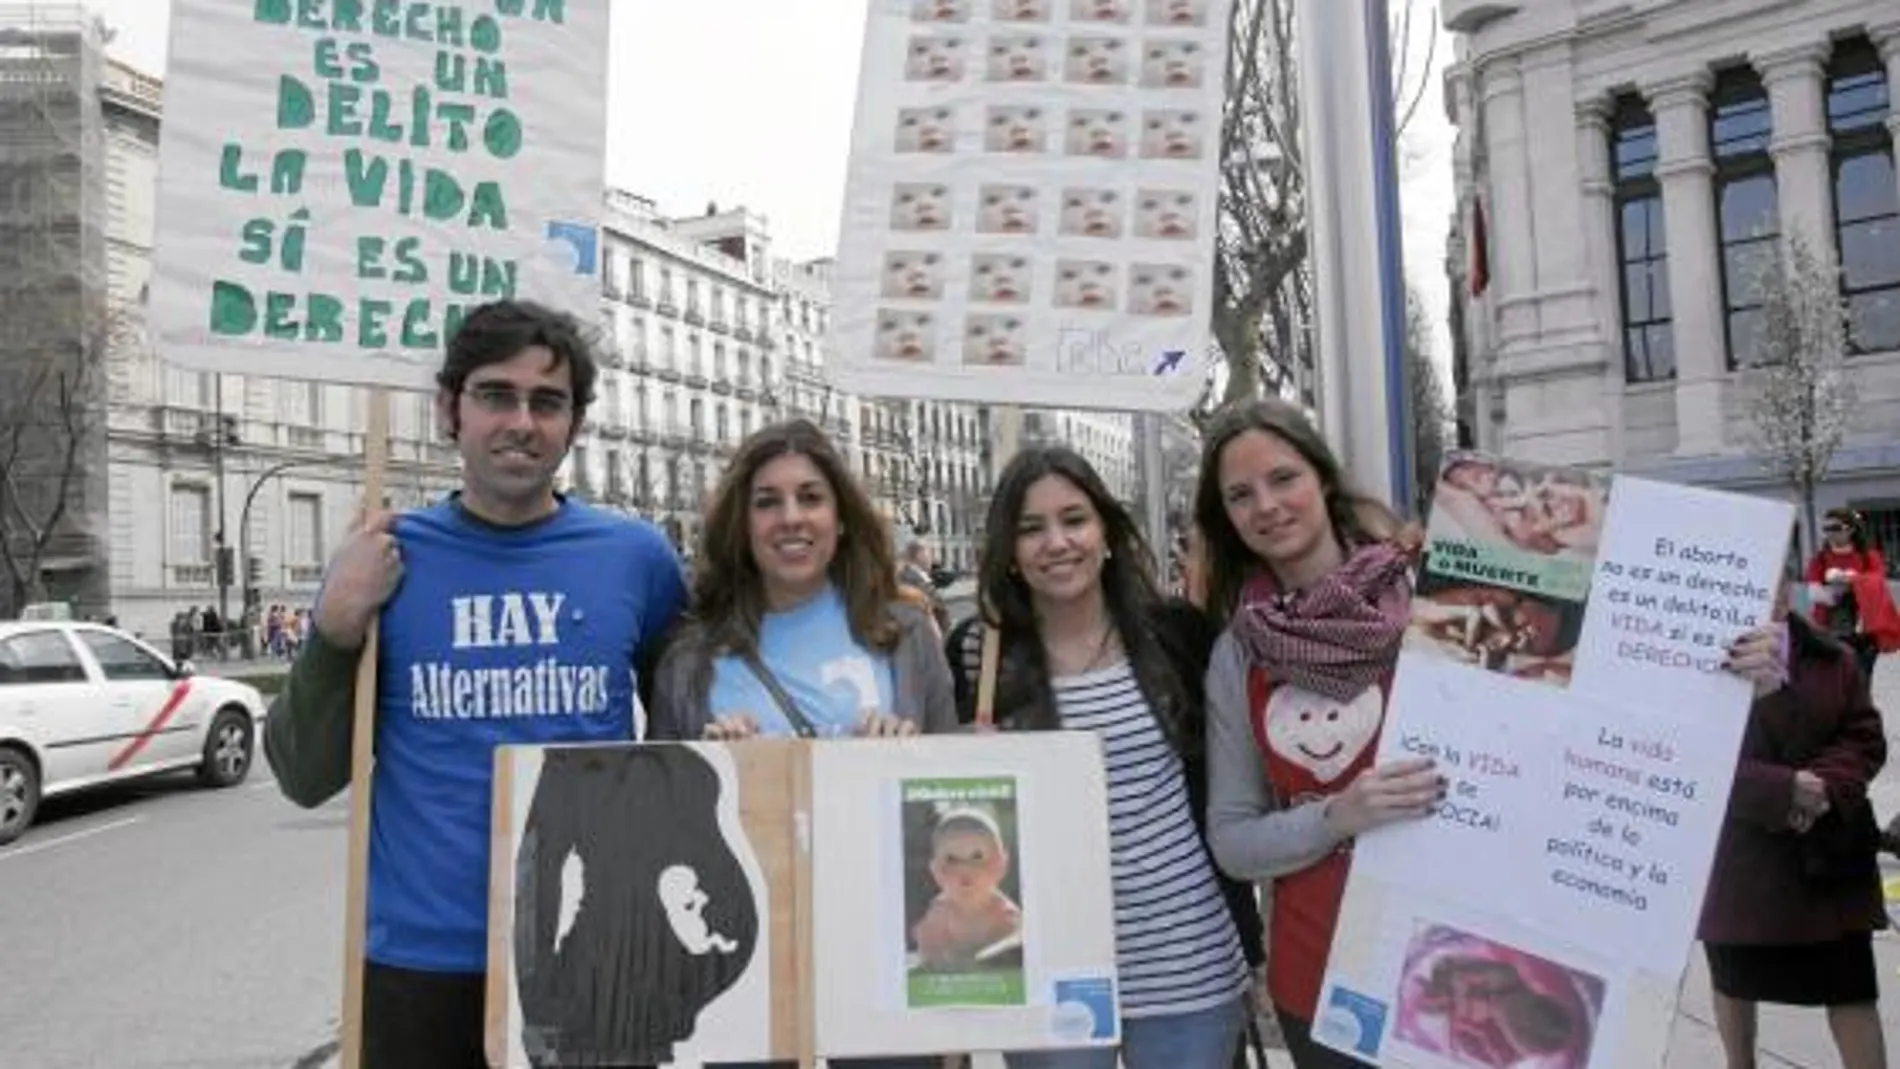 IGNACIO, MACARENA, LUCÍA Y ANA Estos cuatro jóvenes voluntarios expresaron que «el aborto es siempre un asesinato». Criticaron que «últimamente el Gobierno está optando por una política de defensa de la muerte. Habría que cambiar esta cultura de la muerte